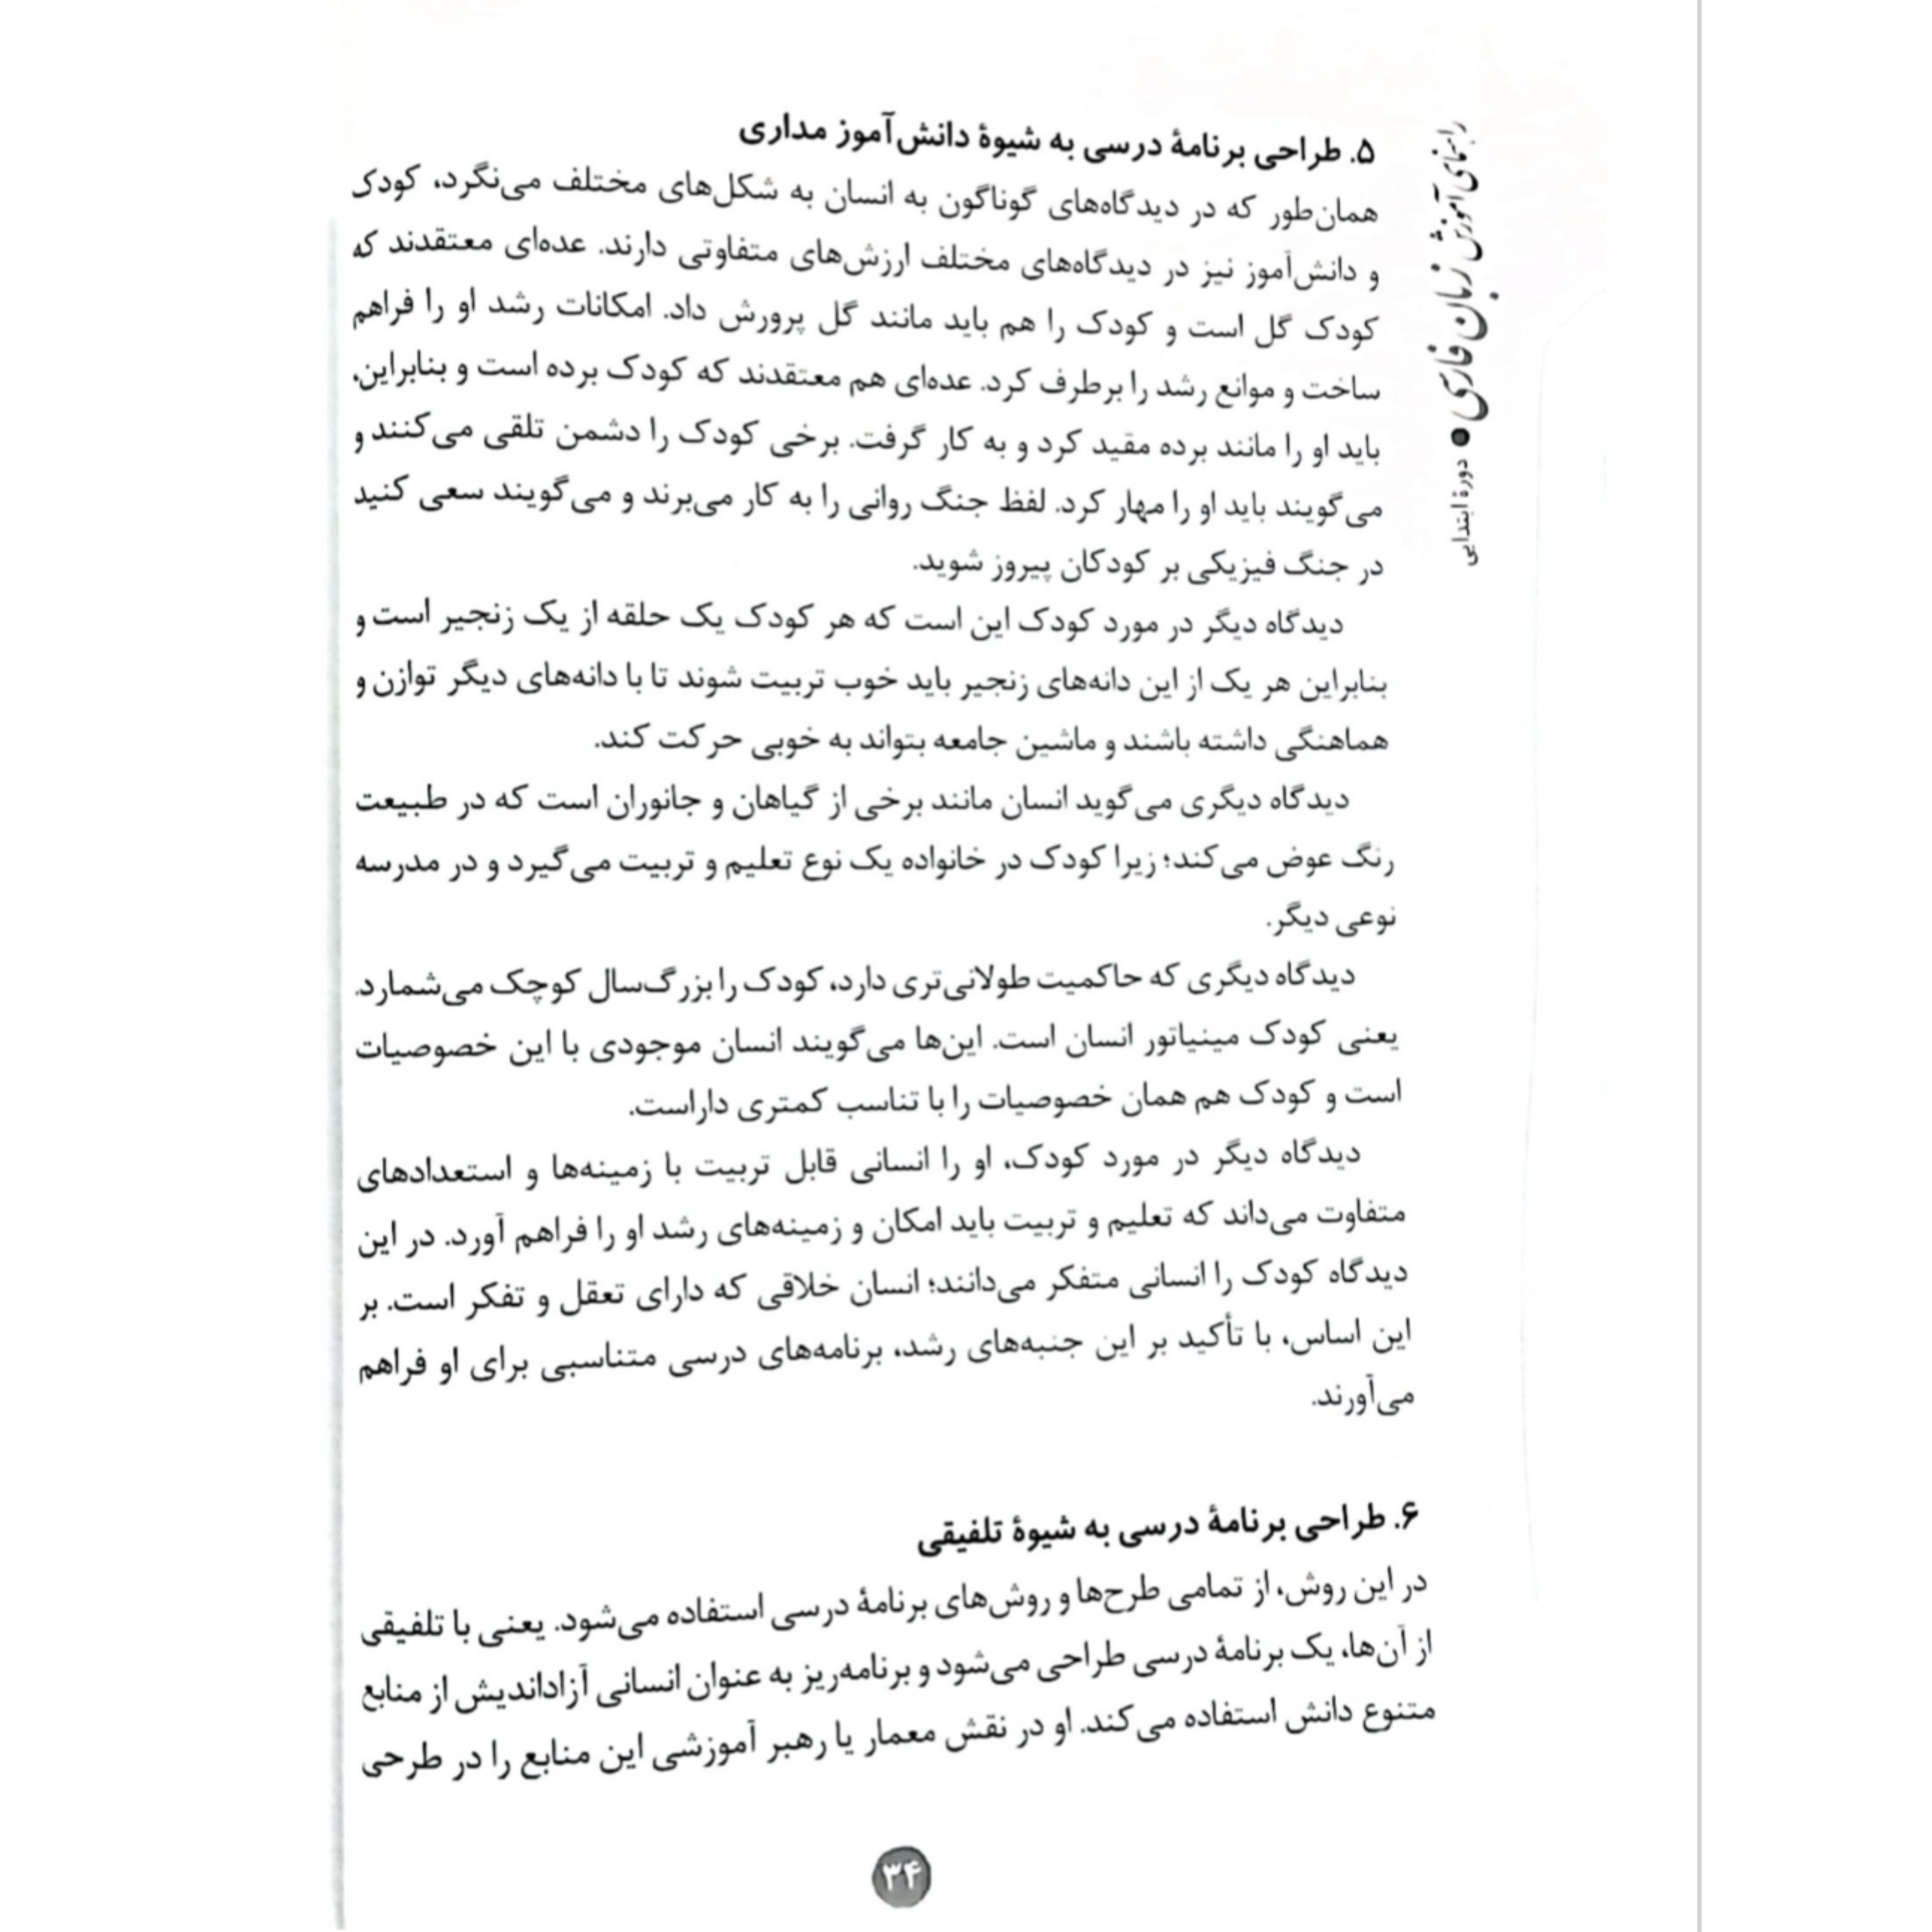 کتاب راهنمای آموزش زبان فارسی در دوره ابتدایی